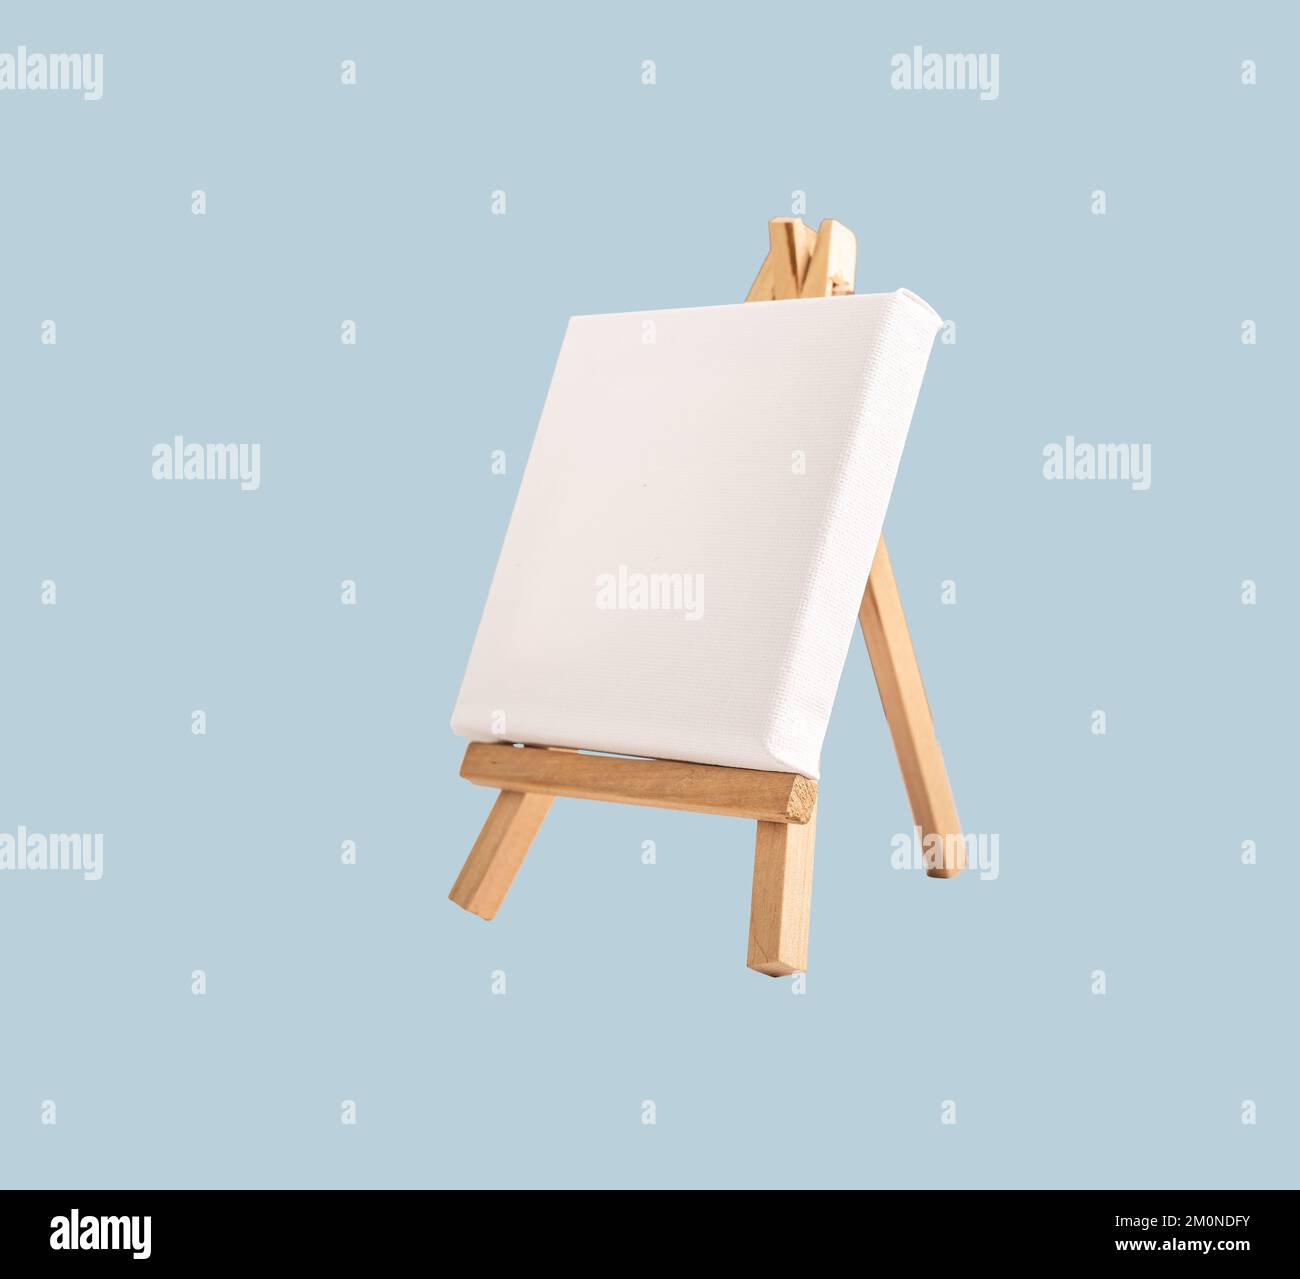 Bianco quadro tela mock up, carta bianca su mini treppiede di legno, cavalletto giocattolo su sfondo blu. Foto di alta qualità Foto Stock